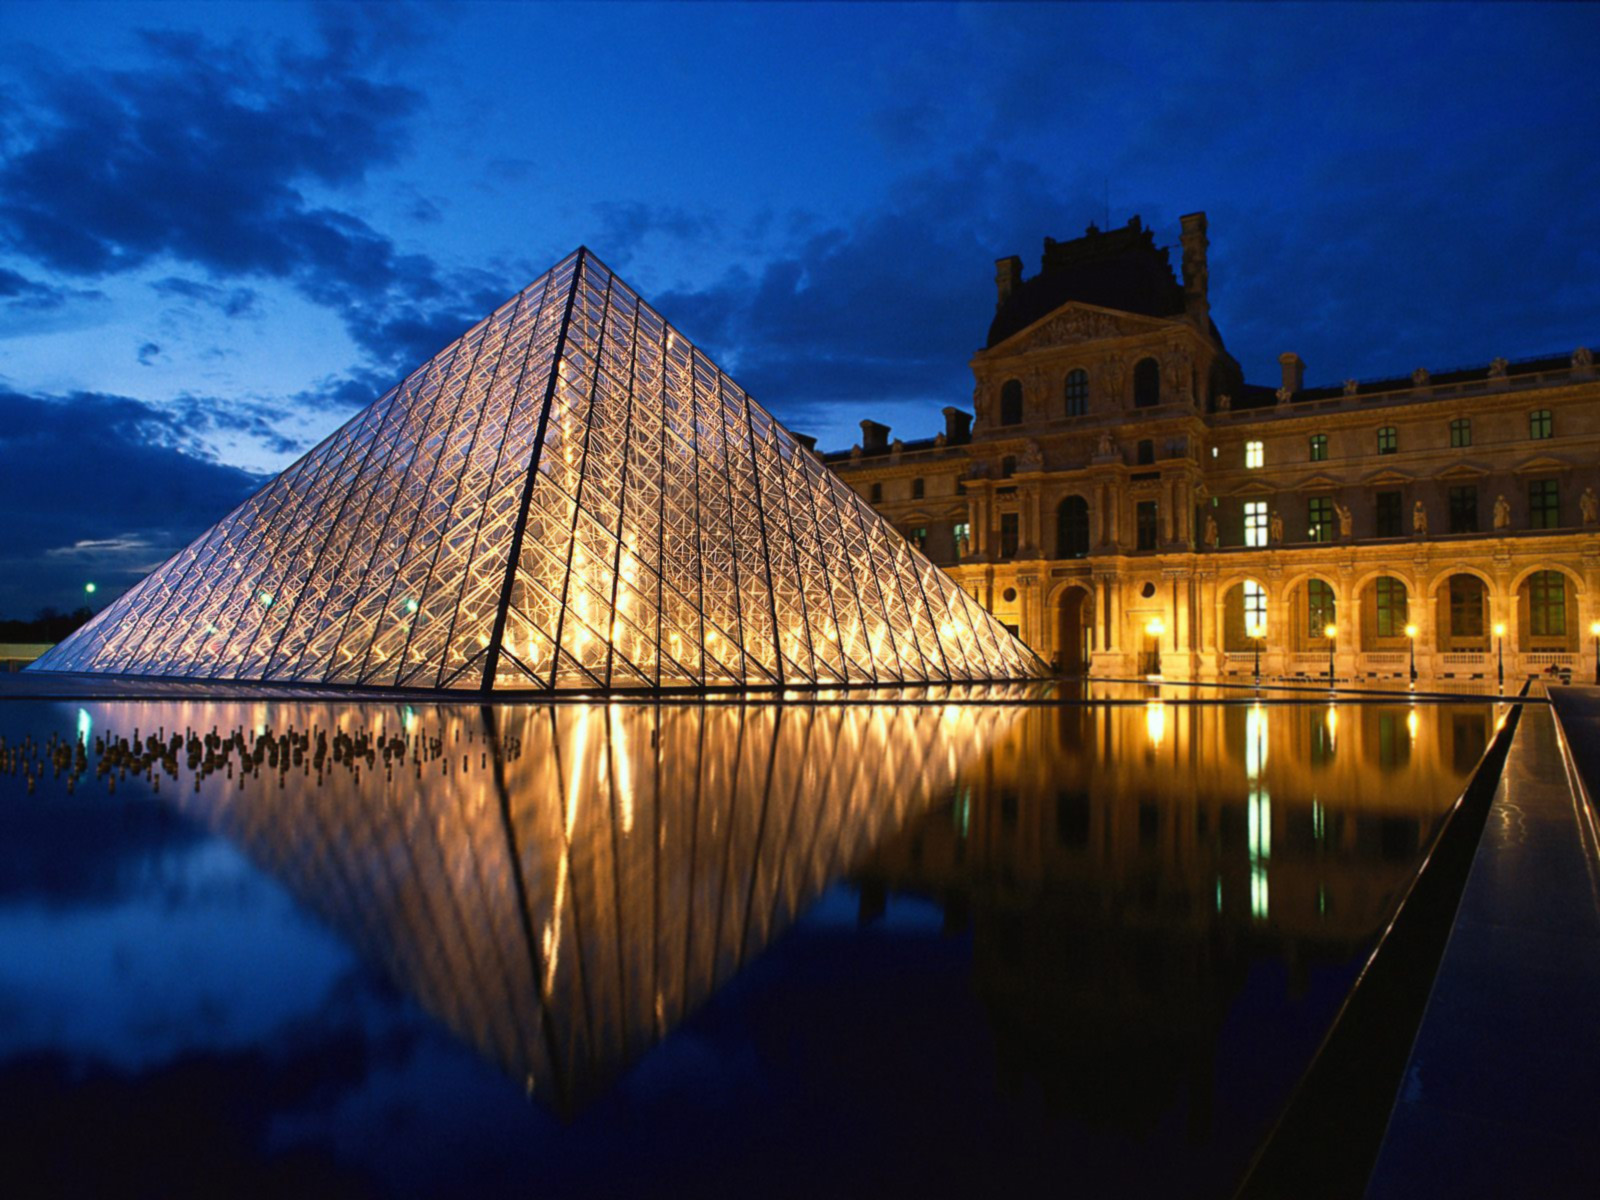 http://3.bp.blogspot.com/-MAcKEOB6tr8/Tc7TI6_AJRI/AAAAAAAAAJo/uEpwYblqF34/s1600/pyramid-at-louvre-museum-paris-france.jpg